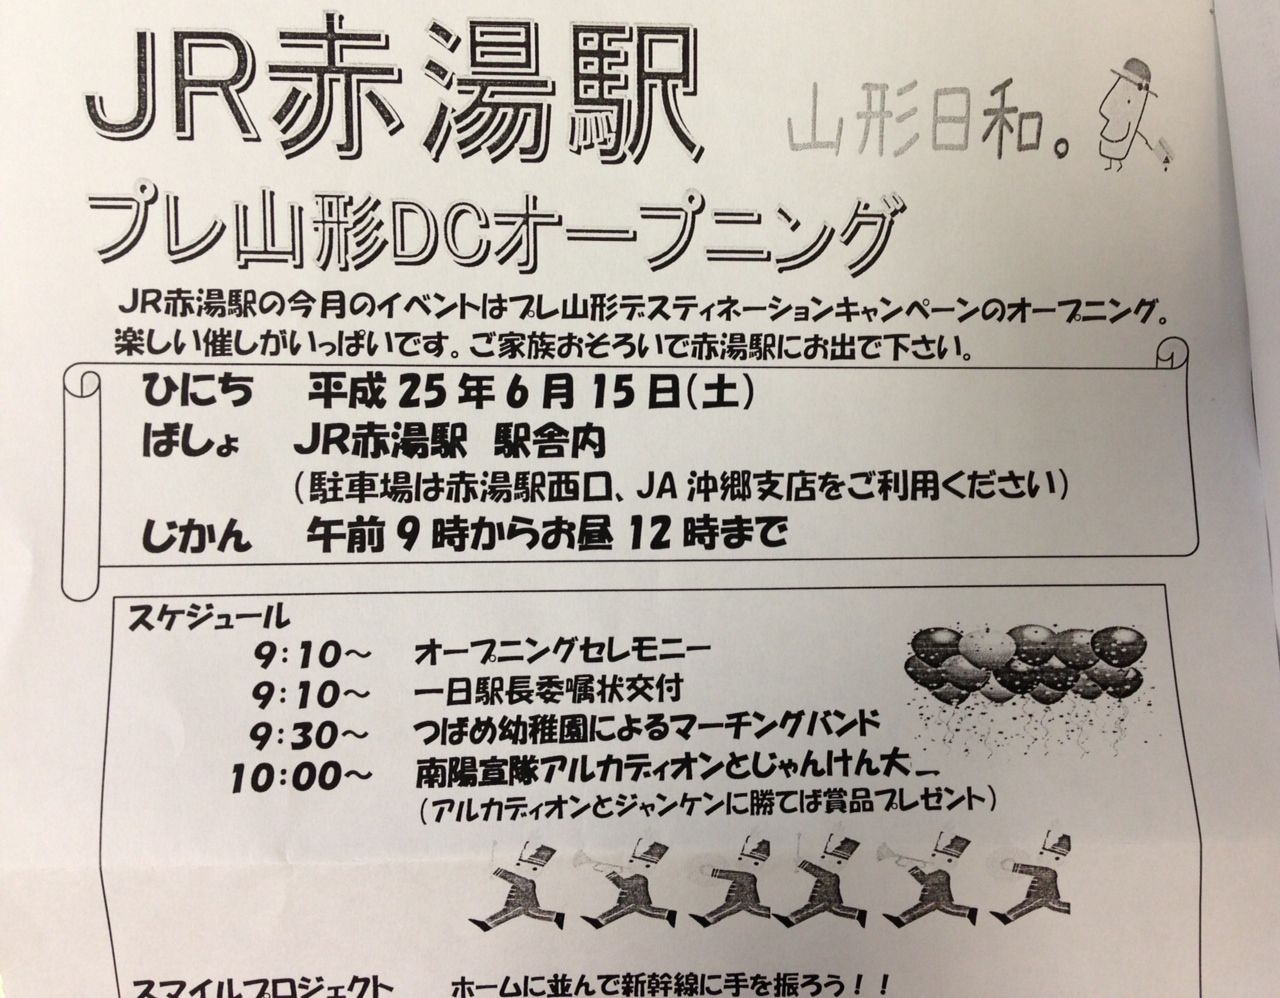 明日はJR赤湯駅でイベントがあります！